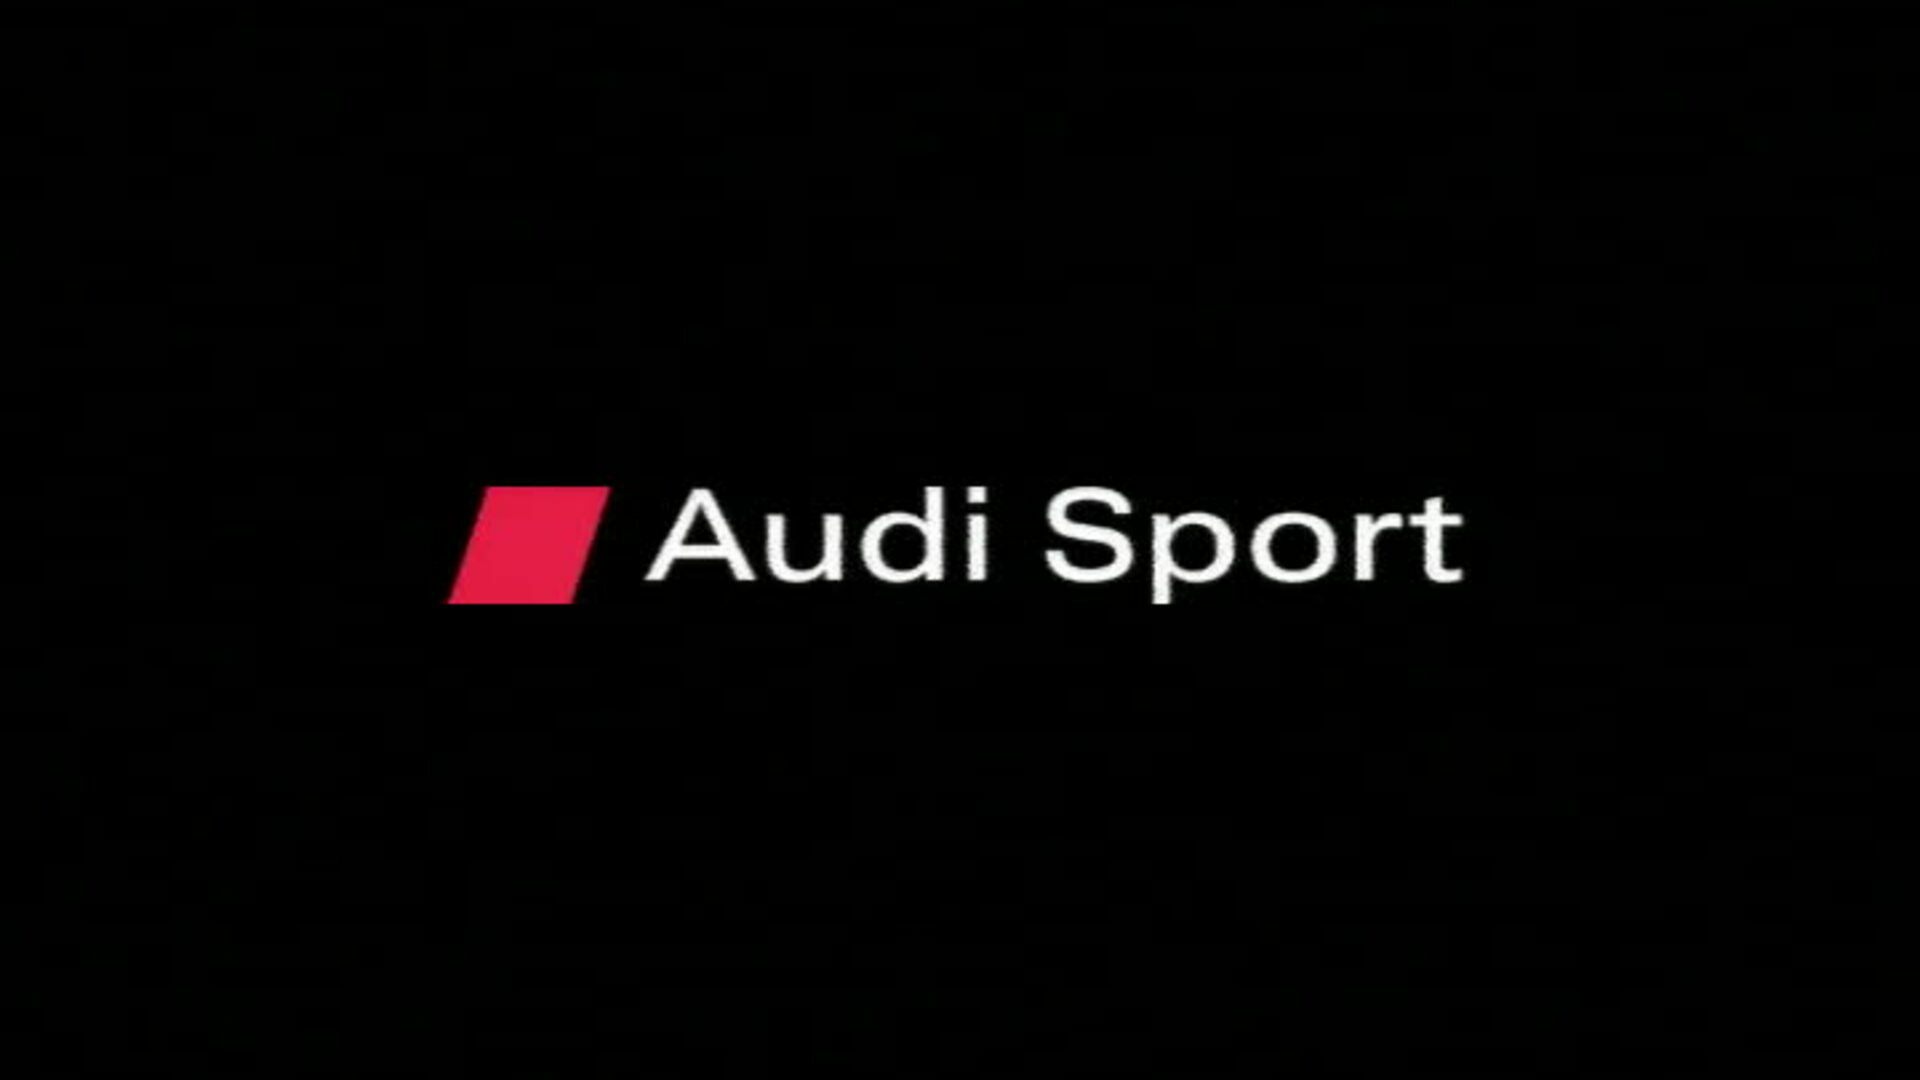 Audi R10 TDI – Die Entstehung von Motor und Wagen